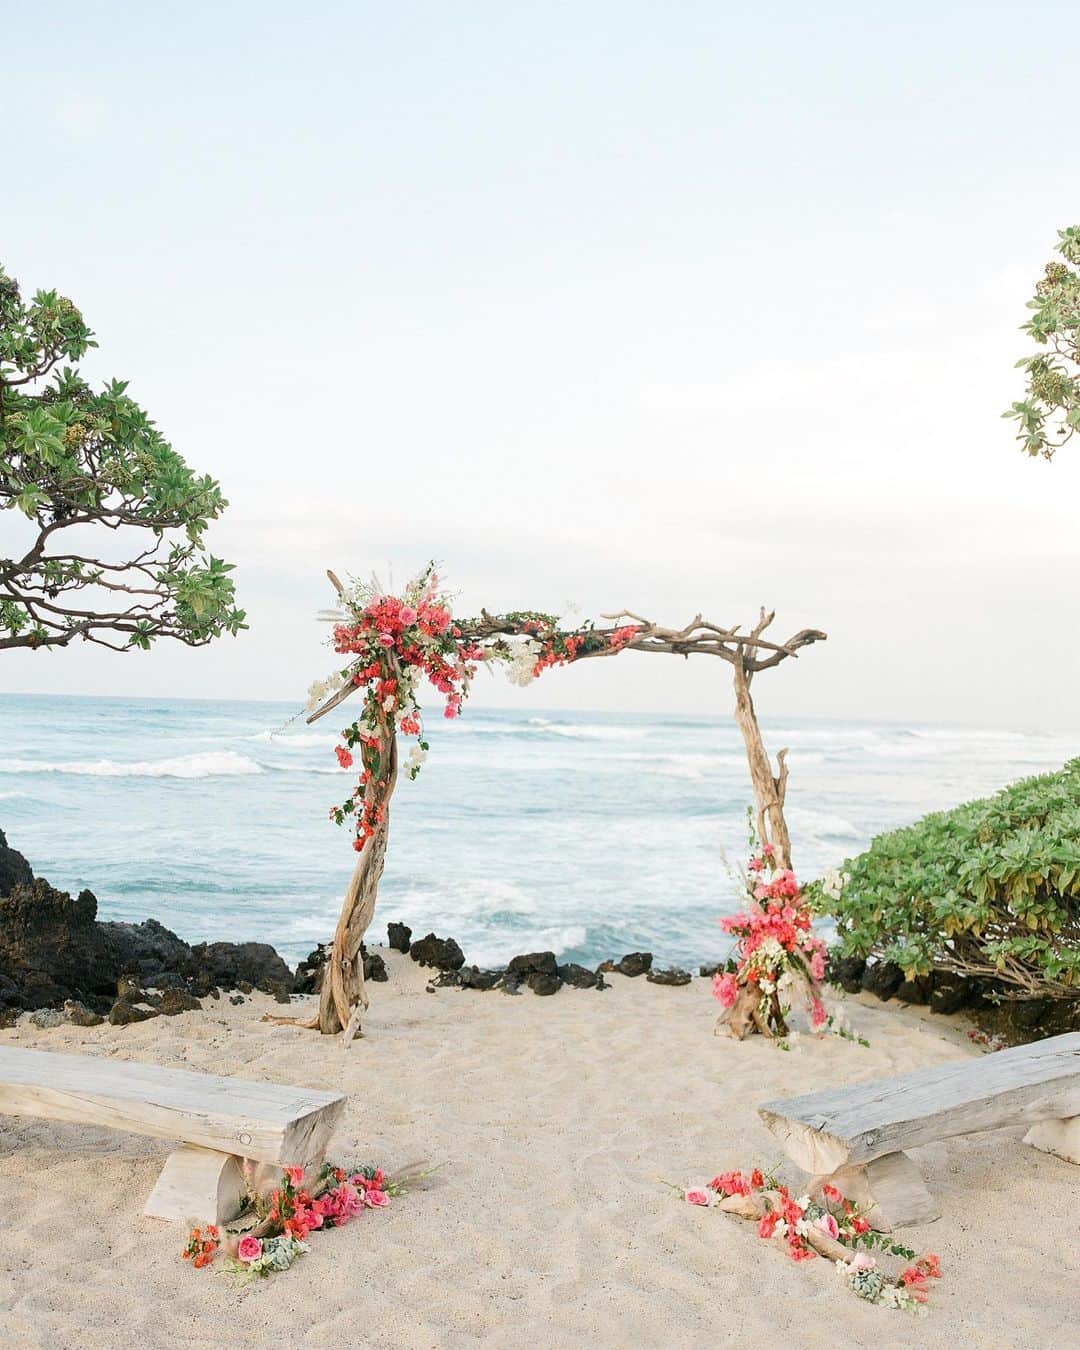 ハワイ挙式のCheersWedding チアーズウェディングのインスタグラム：「ハワイウェディングなら @cheers_wedding﻿ ﻿ ハワイを知り尽くす私たちだからできる豊富なバリエーション﻿ ﻿ ハワイの伝統と文化を大切にする﻿ 「HISTORICAL WEDDING」﻿ ﻿ ハワイらしさを存分に感じられる﻿ 「BOTANICAL WEDDING」﻿ ﻿ まるで映画のワンシーンのような﻿ 「CELEBRITY WEDDING」﻿ ﻿ お手軽によりハワイを身近に感じられる﻿ 「CASUAL WEDDING」﻿ ﻿ おふたりの大切にされたいスタイルを﻿ チアーズウェディングならではの﻿ 豊富なバリエーションでプロデュースいたします。﻿ ﻿ ﻿ ***********************﻿ ﻿ 【HP】﻿ https://www.cheerswedding.jp﻿ ﻿ ☎︎0120-128-828﻿ 平日11:00〜19:00／土日祝10:00〜19:00﻿ ﻿ ***********************﻿ ﻿ ◆ウェディングパーク海外﻿ チアーズウェディングで検索！﻿ https://foreign.weddingpark.net/agentlist/100063/﻿ ﻿ ﻿ #チアーズウエディング﻿ #ハワイウェディング ﻿ #海外ウェディング﻿ #リゾートウェディング﻿ #ガーデンウェディング﻿ #海外挙式﻿ #ハワイ挙式﻿ #ハワイ婚﻿ #新婚旅行﻿ #ハワイ旅行﻿ #cheerswedding﻿ #hawaiiwedding﻿ #ハワイハネムーン﻿ #ハワイウェディングプロデュース﻿ #日本中のプレ花嫁さんと繋がりたい﻿ #プレ花嫁﻿ #結婚式 ﻿ #花嫁準備﻿ #式場迷子﻿ #hawaiistagram﻿ #ハワイ情報 ﻿ #オアフ島﻿ #結婚式場探し﻿ #ホテルウェディング ﻿ #フォーシーズンズフアラライ  #2021ウェディング﻿ #オリジナルウェディング﻿ #アフターパーティー ﻿ #2021秋婚﻿ #リゾ婚」